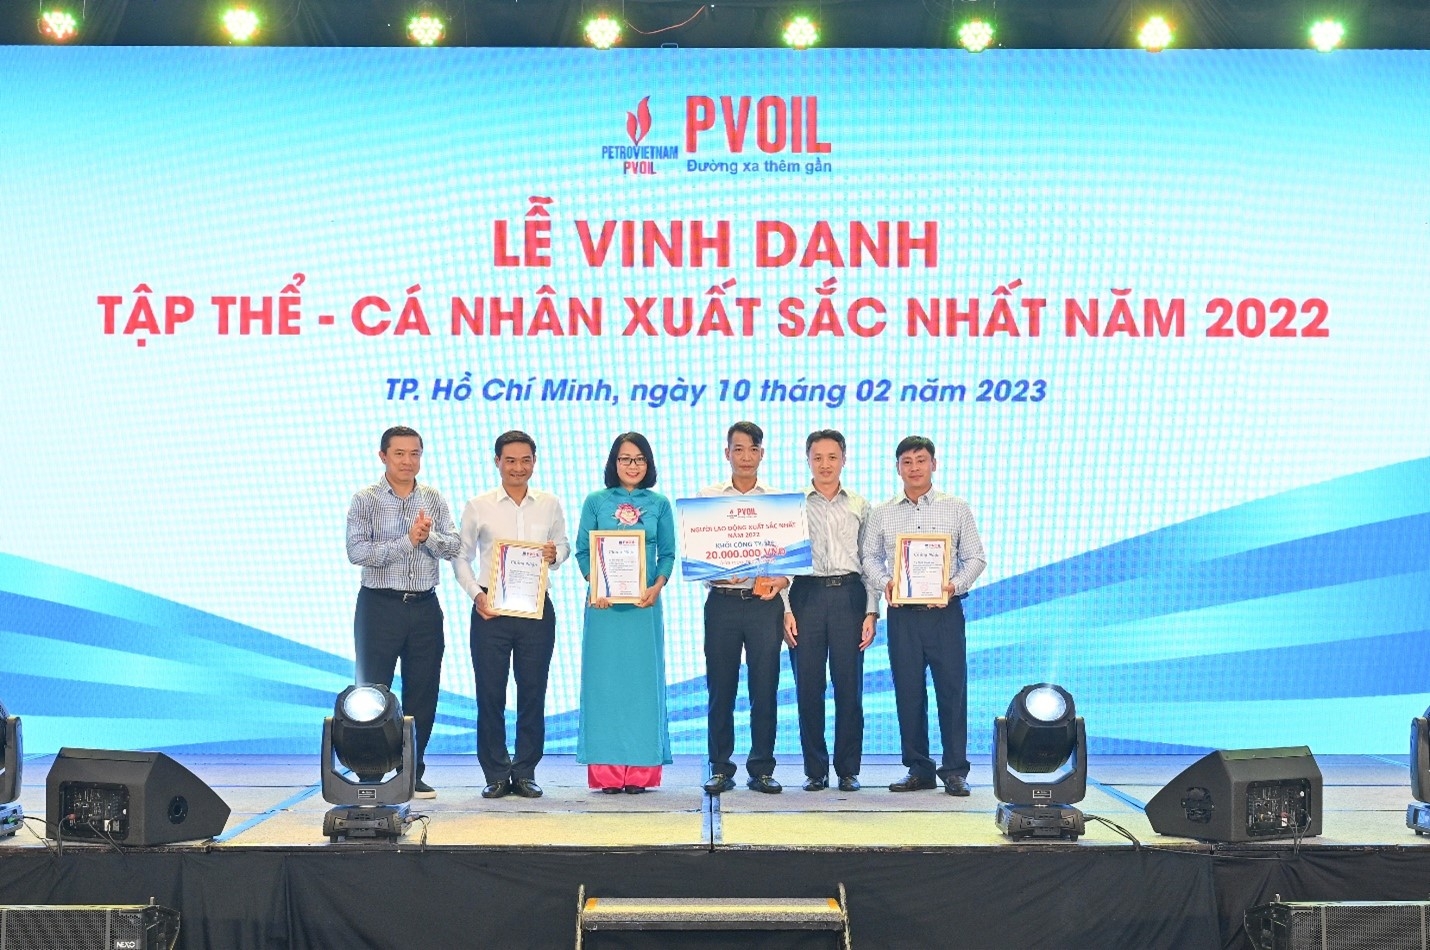 Lãnh đạo PVOIL trao danh hiệu “Người lao động xuất sắc nhất năm 2022” (khối Công ty mẹ)